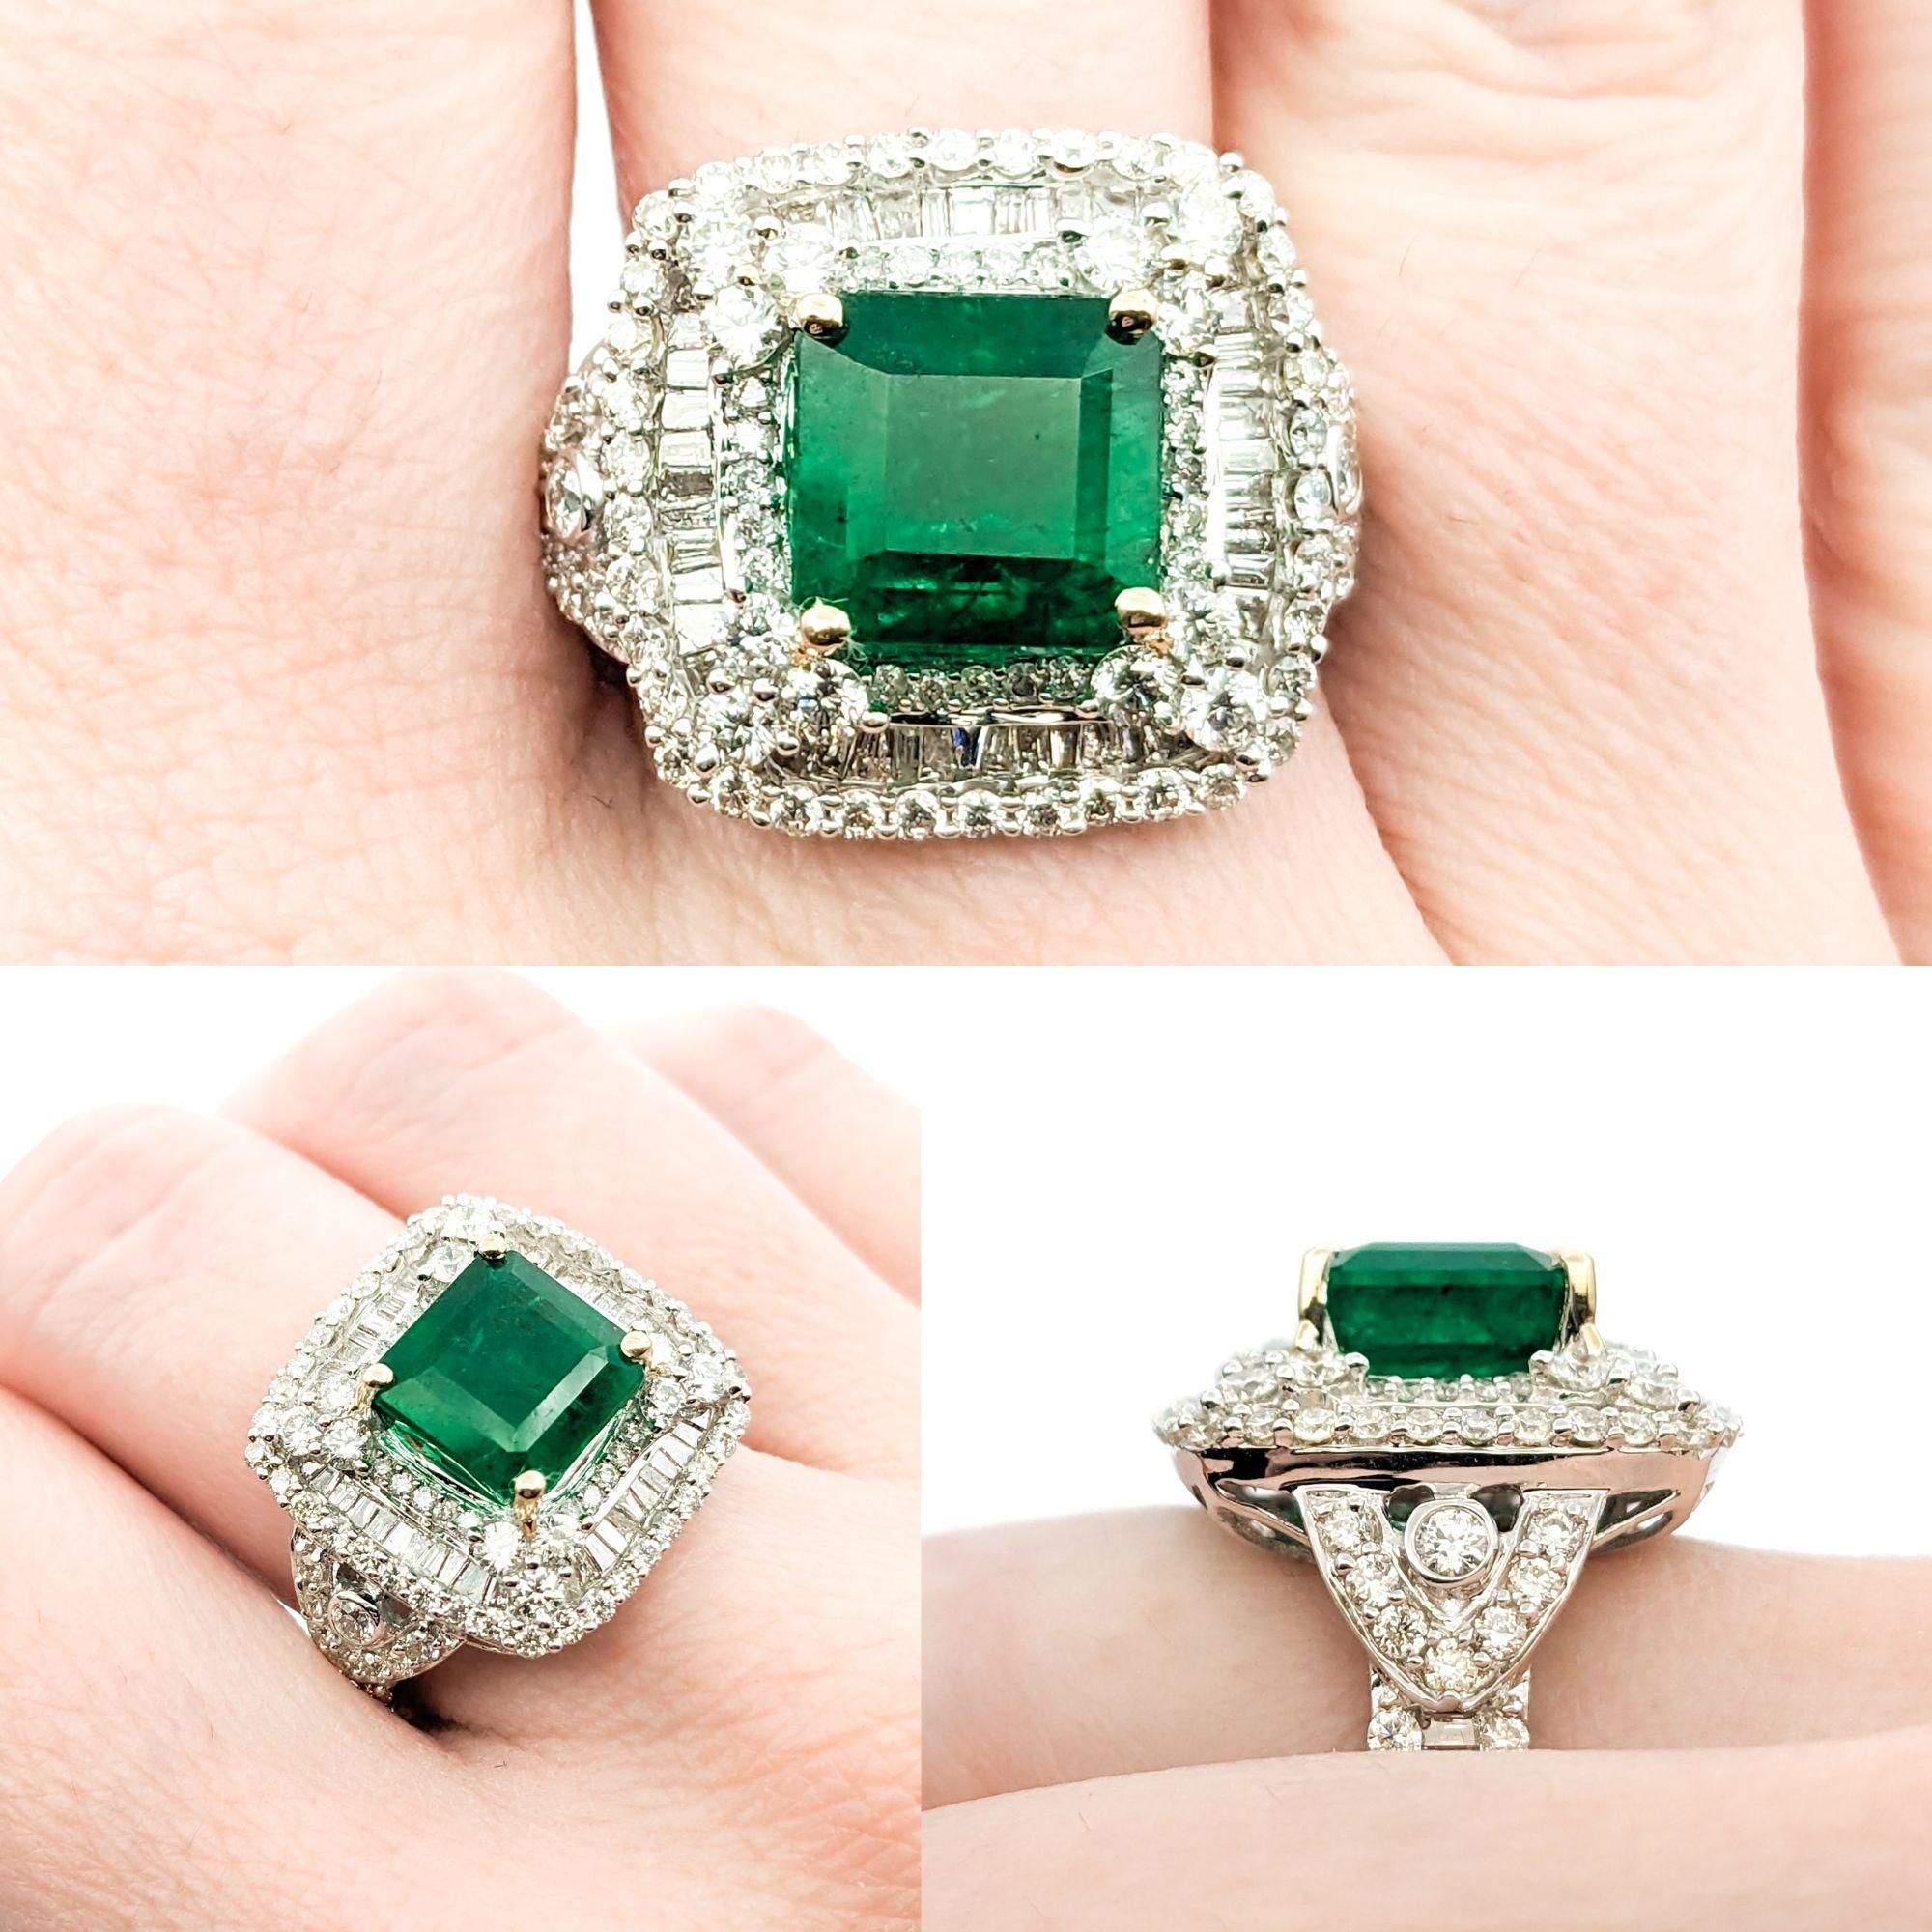 3,84ct Smaragd & 2,31ctw Diamant Ring in Weißgold

Wir stellen diesen exquisiten Smaragdring aus 18 Karat Weißgold vor. Dieser Ring ist mit einem atemberaubenden 3,84-karätigen Smaragd besetzt, der für seinen tiefen, sattgrünen Farbton und seine